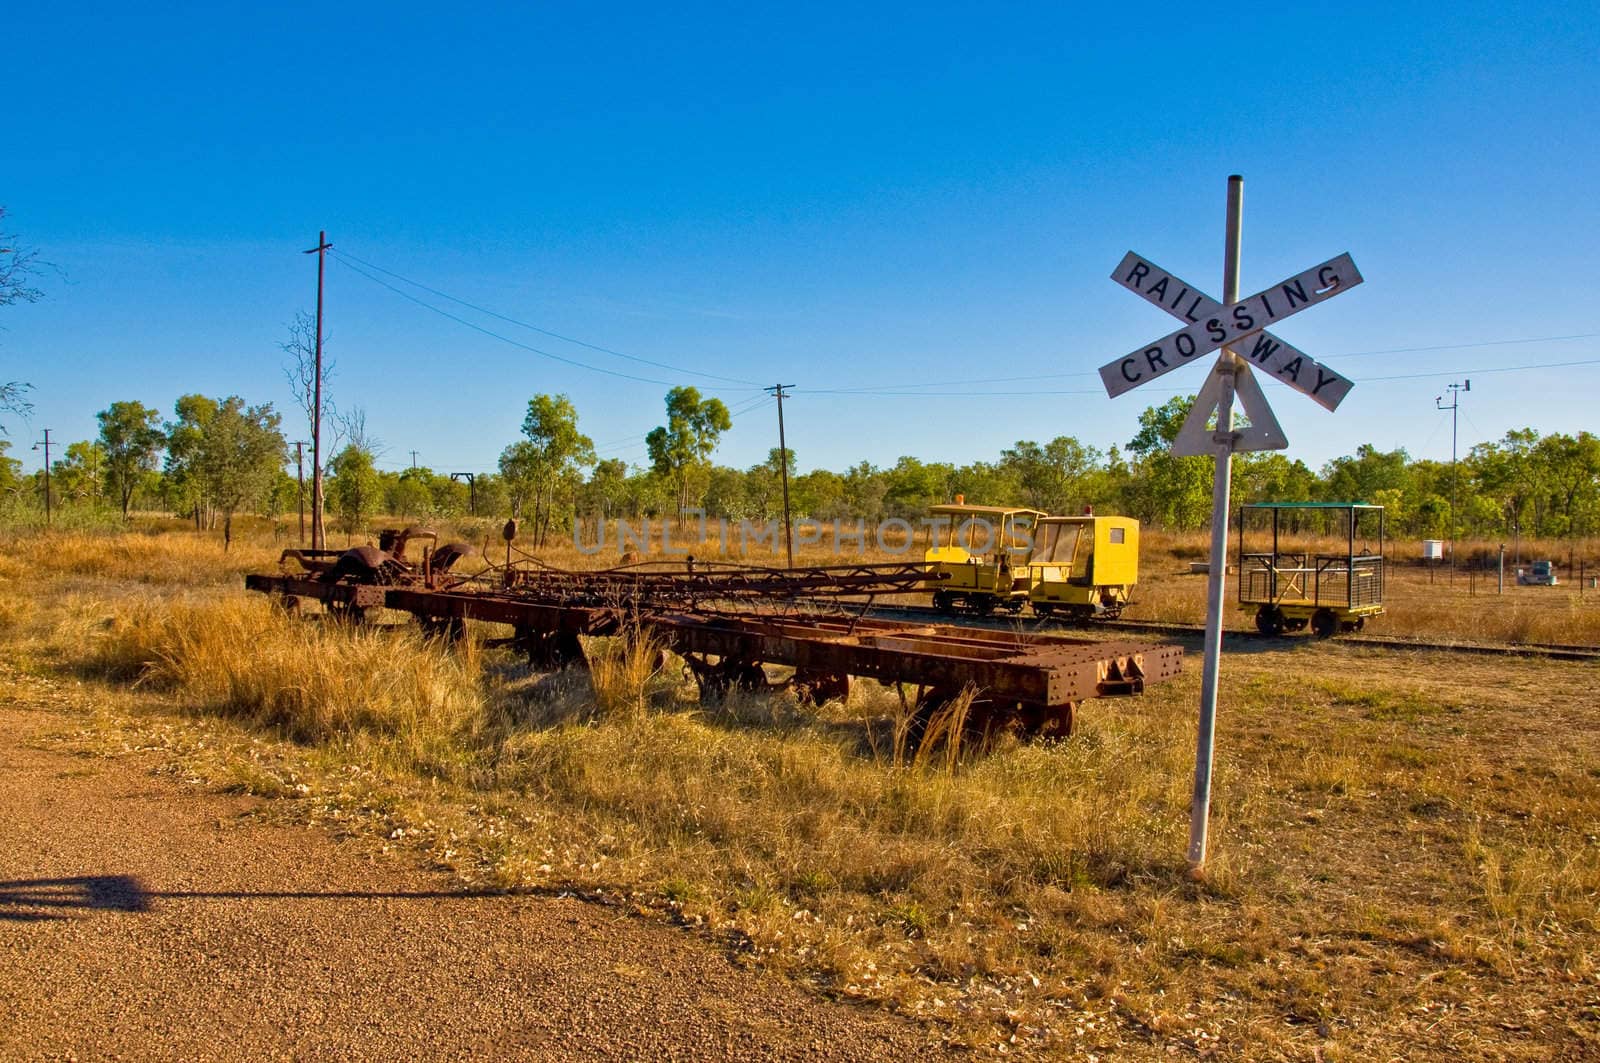 old freight train in the australian desert